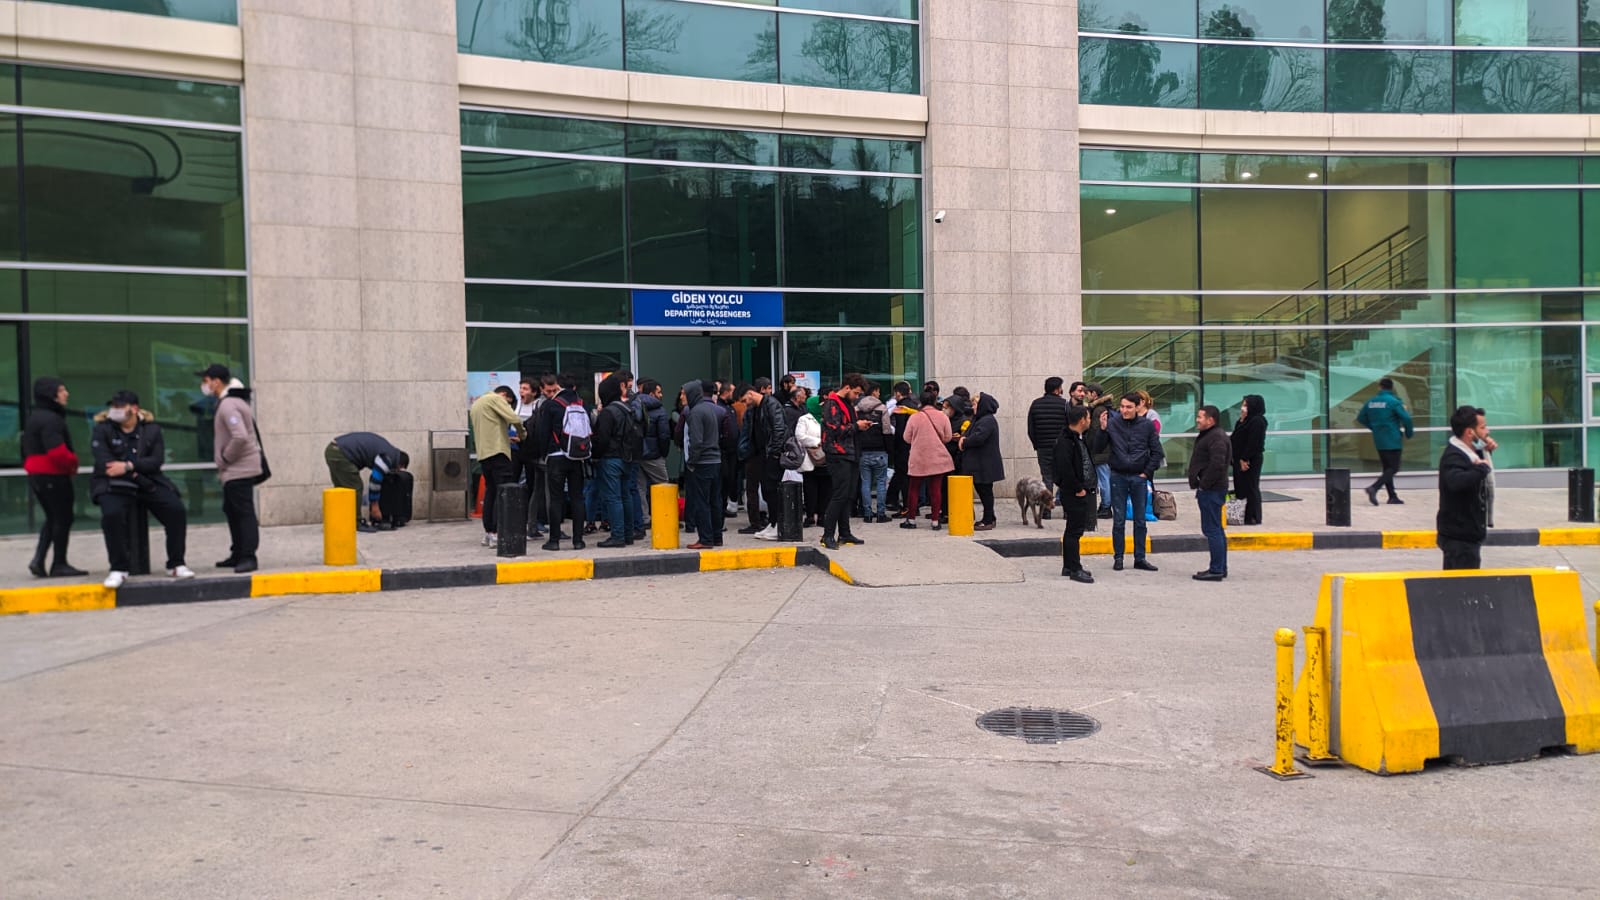 Sarp Sınır Kapısı, yolcu geçişlerine kapatıldı